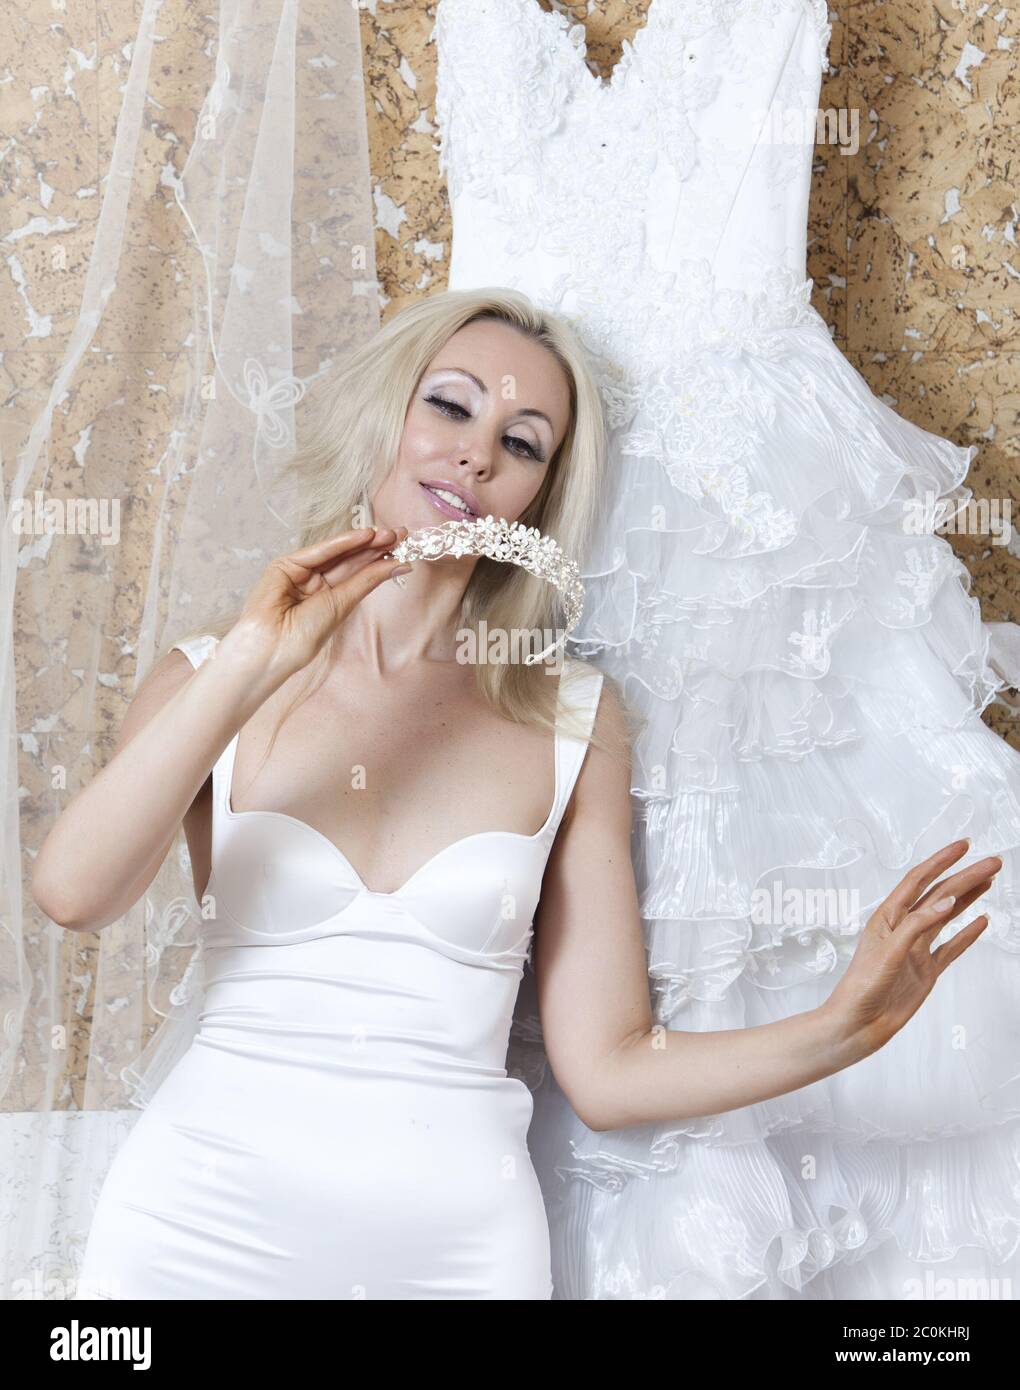 la jeune femme près de la robe de mariage rêve de mariage Banque D'Images